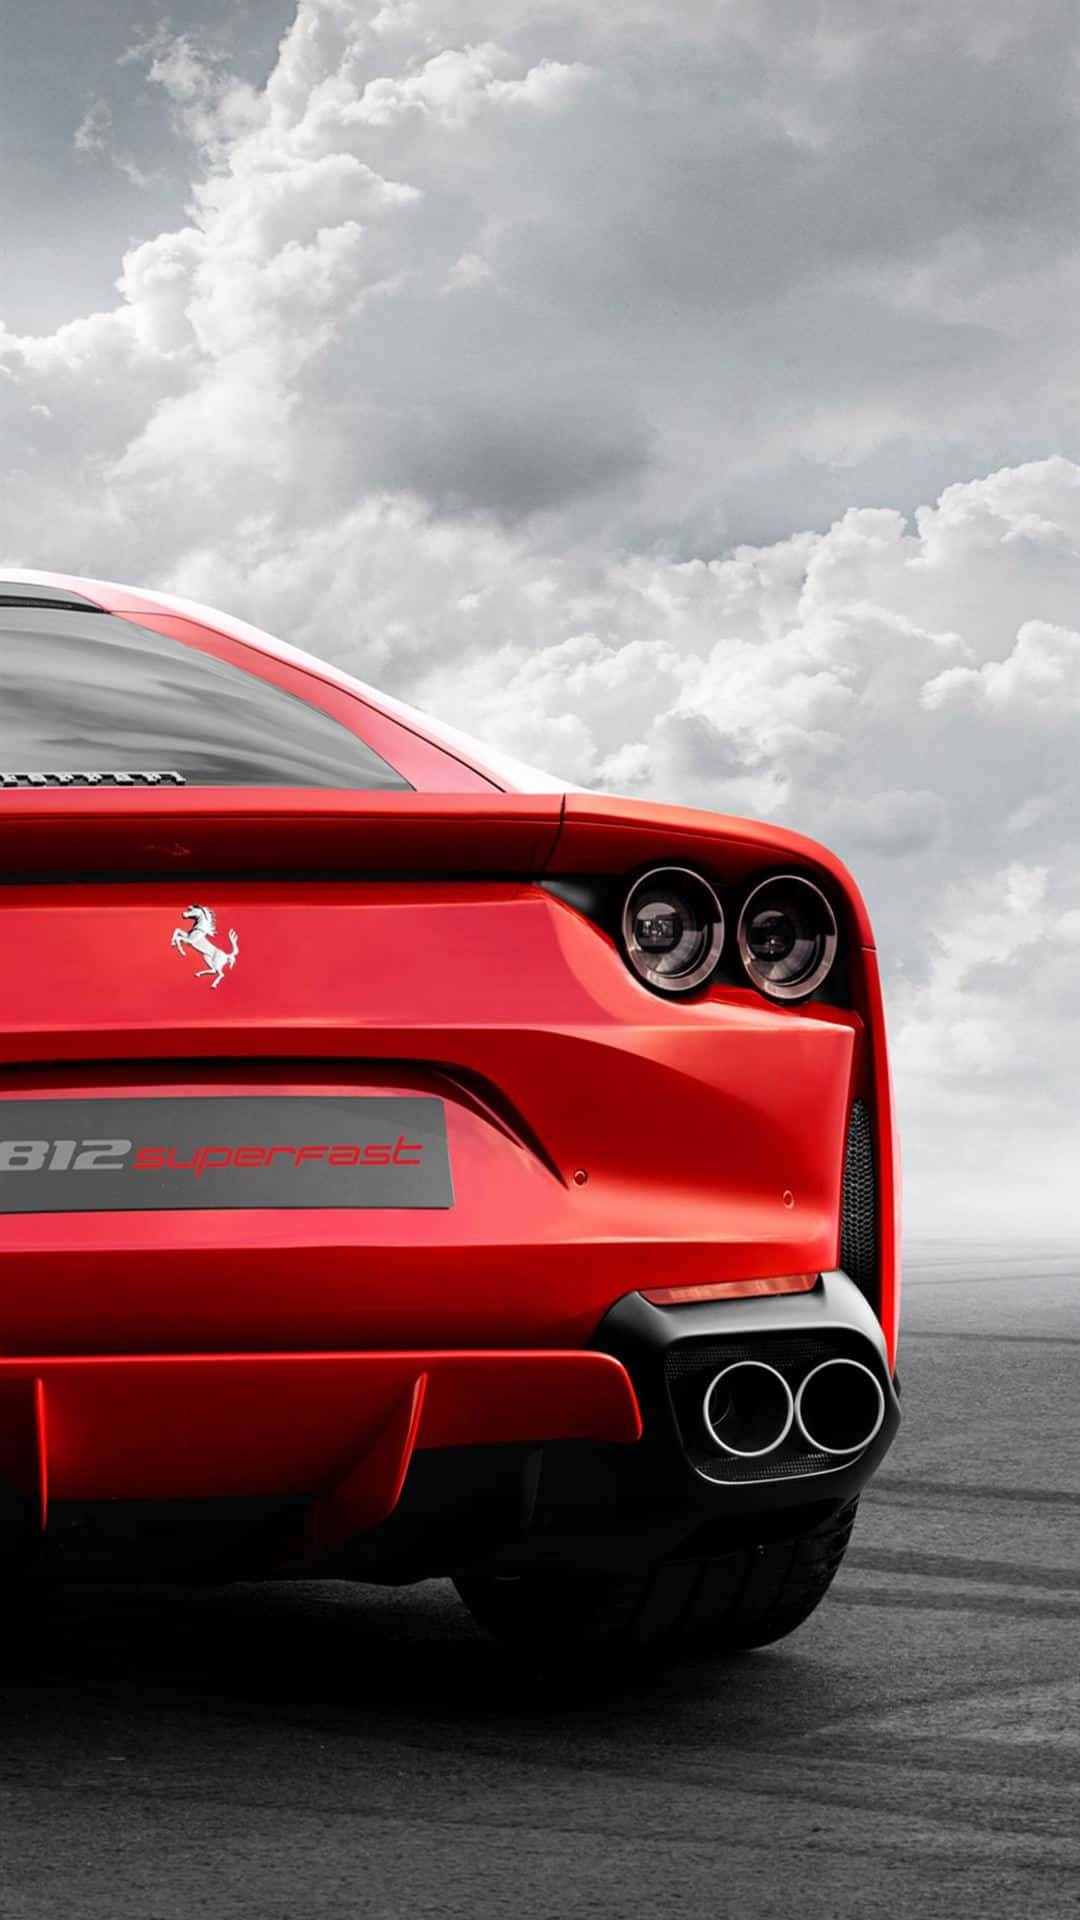 Gedin X En Riktig Hastighetsupplevelse Med Ferraristil På Din Datorskärm Eller Mobilbakgrund. Wallpaper